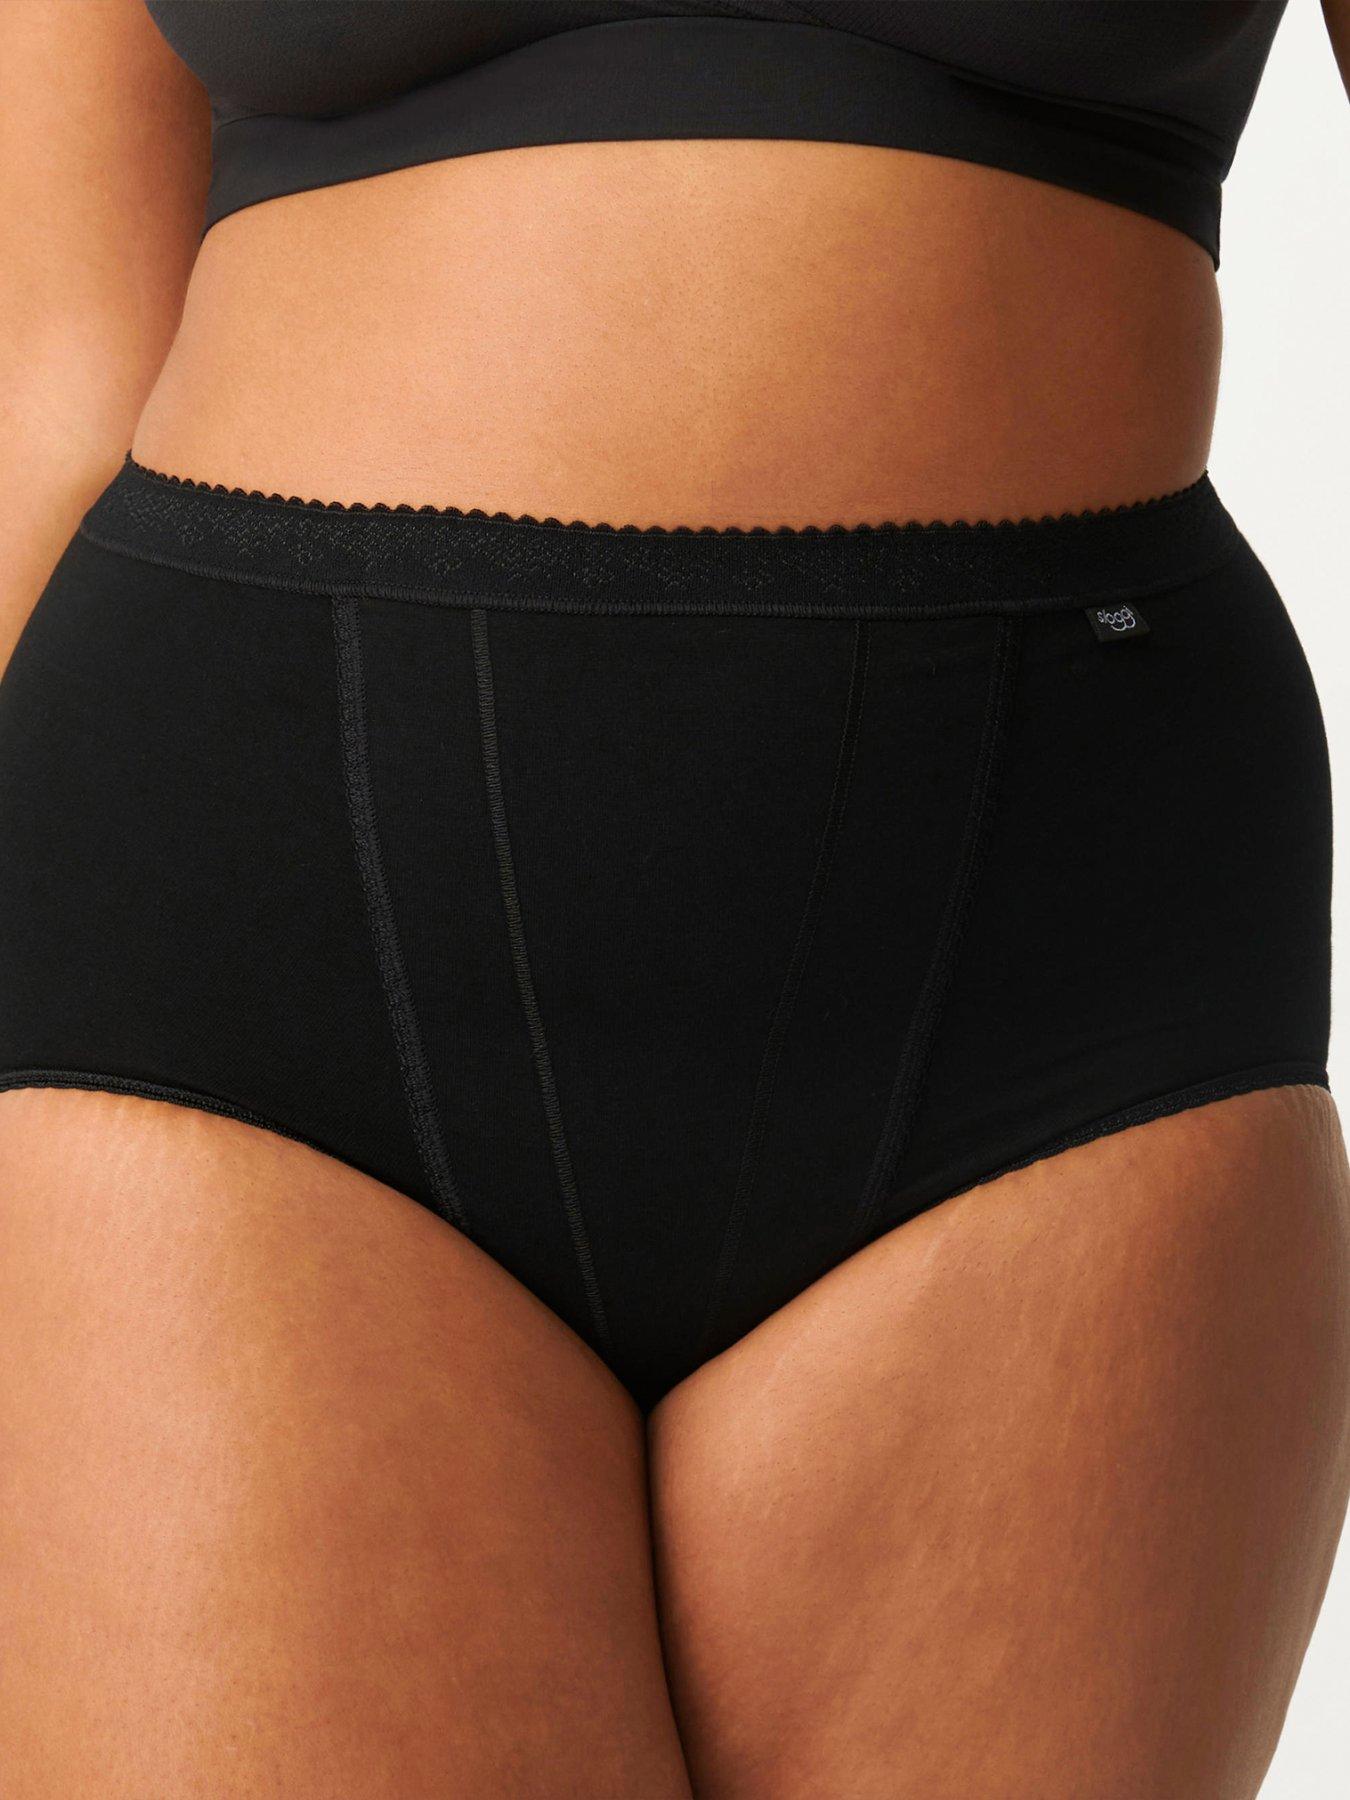 ANNE KLEIN 3-Pair High Leg No Visible Panty Brief Underwear Polyester Size  L 